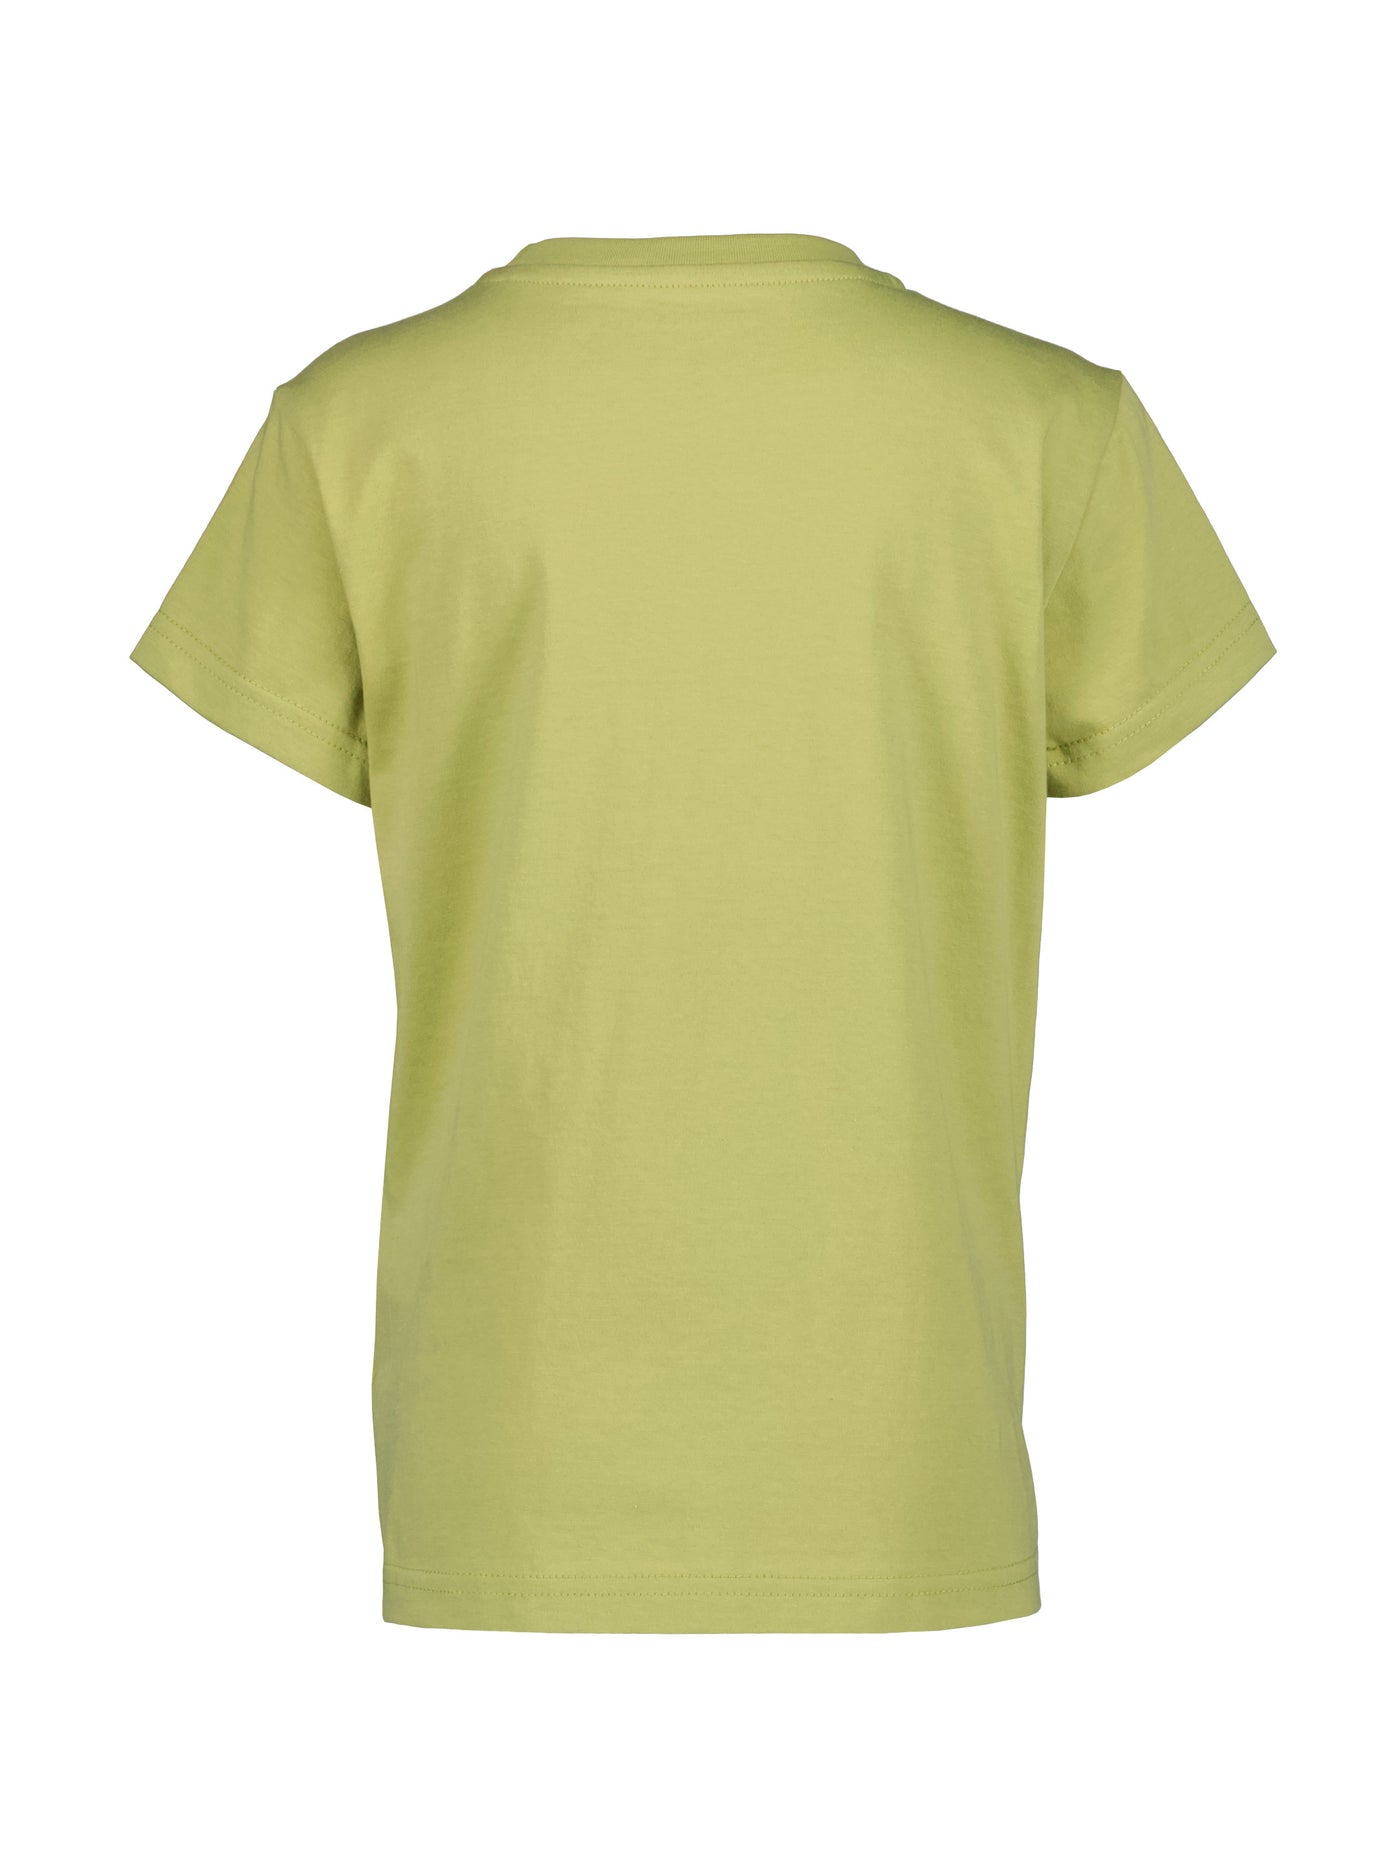 Didriksonsin lasten ja nuorten Mynta logo t-paita vaaleanvihreässä sävyssä takaa kuvattuna